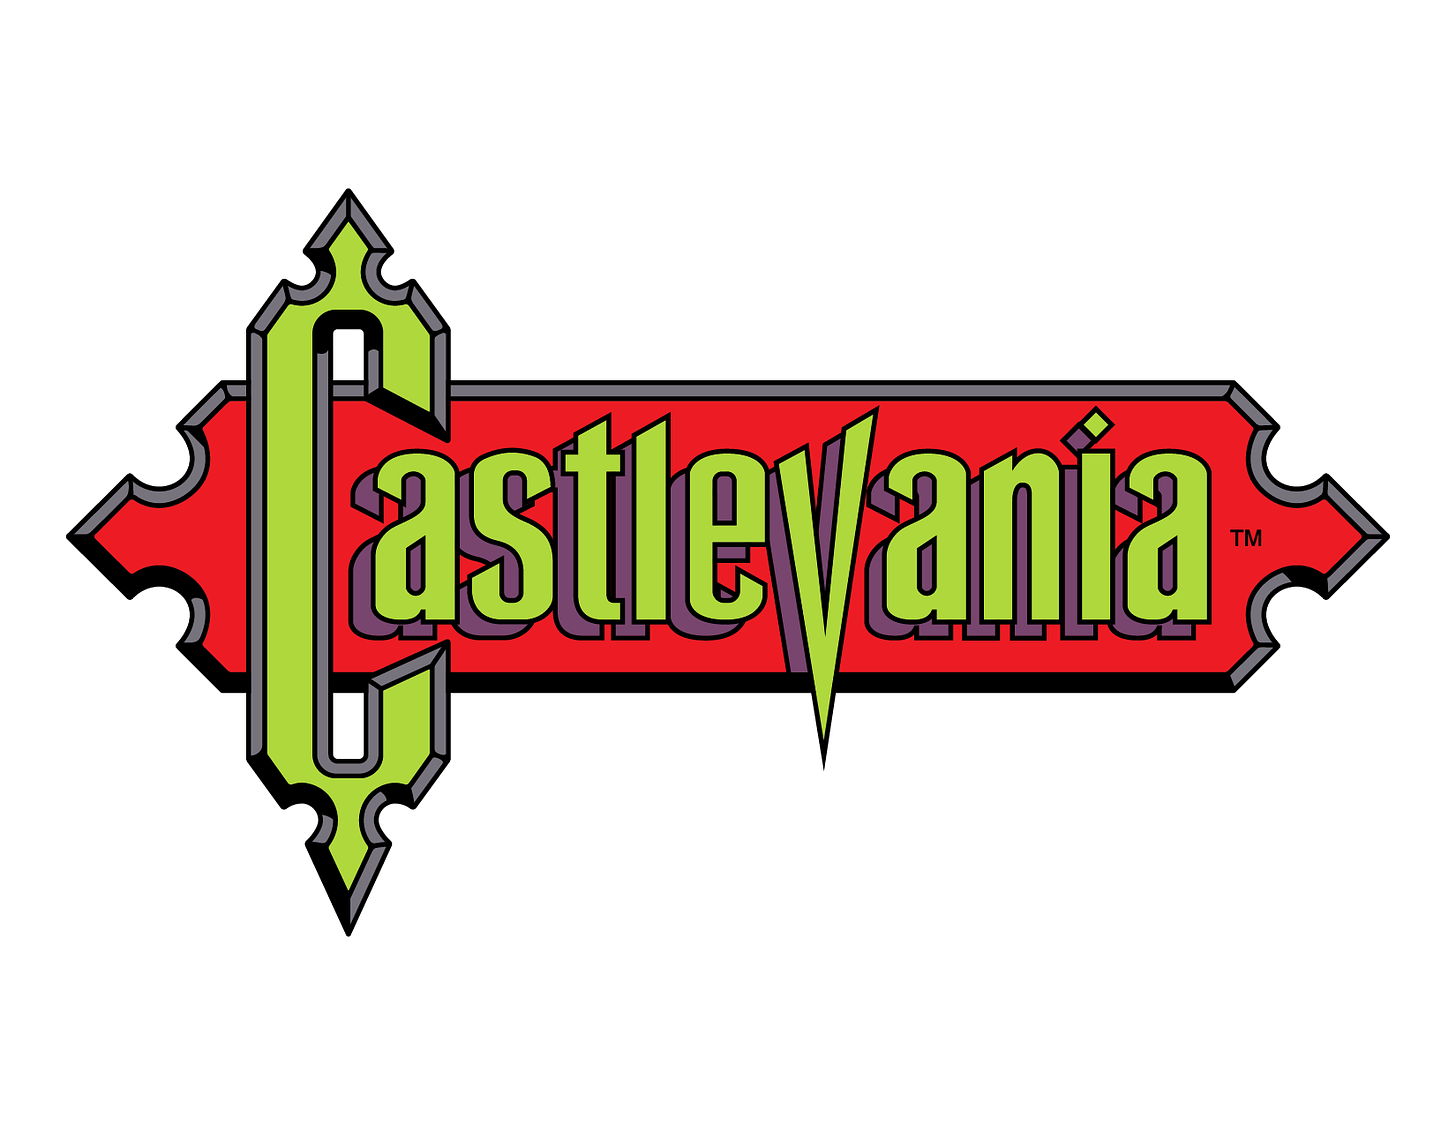 Castlevania Classic NES Logo Vector by FB-Malken on DeviantArt